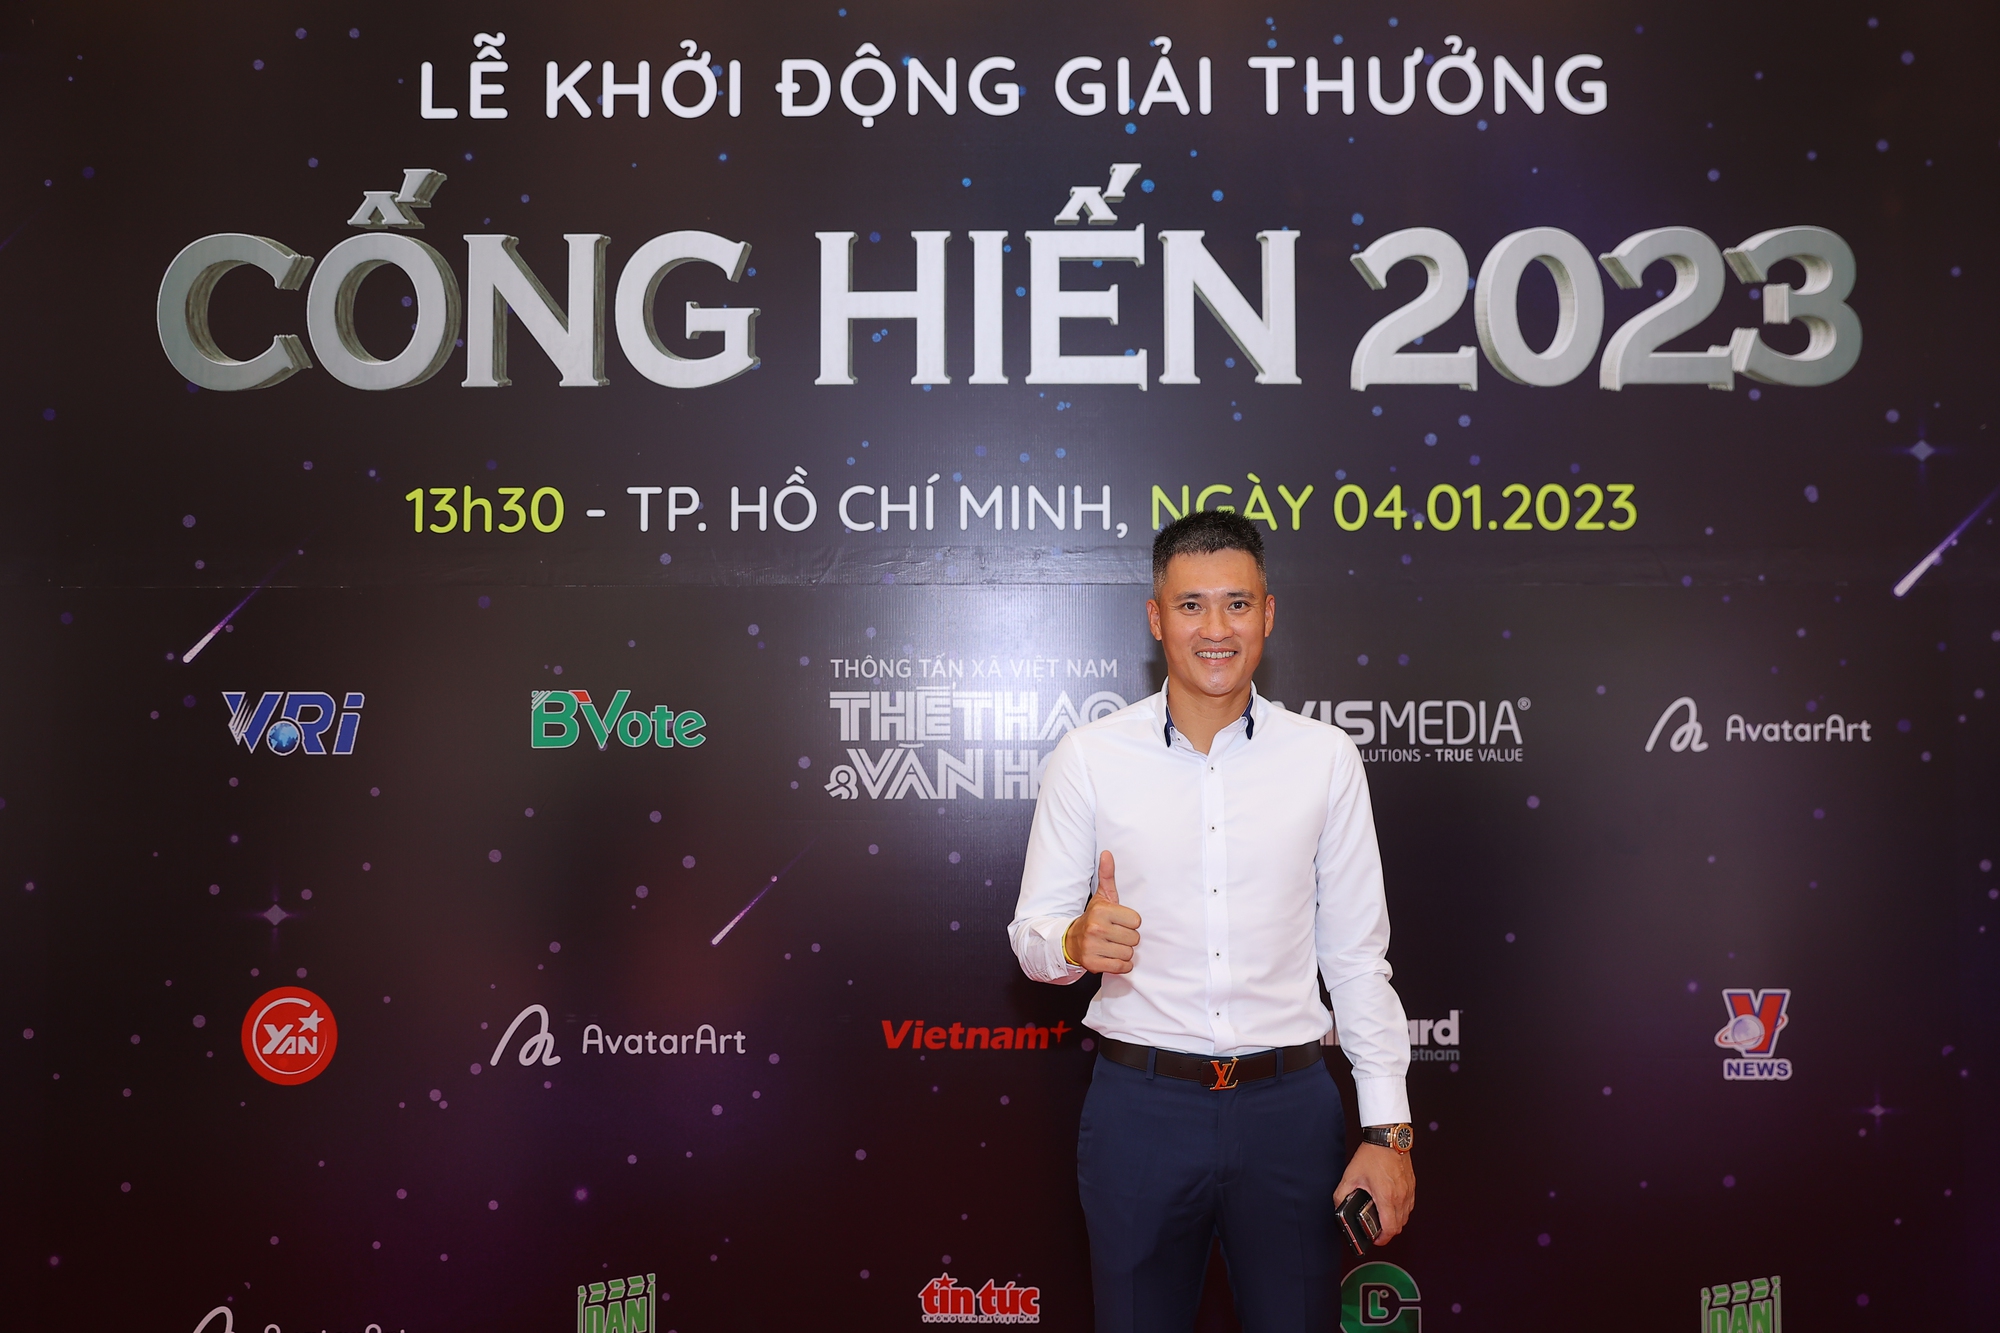 Hoa hậu Mai Phương, Công Vinh, Cẩm Vân đổ bộ thảm đỏ giải Cống hiến 2023 - Ảnh 3.